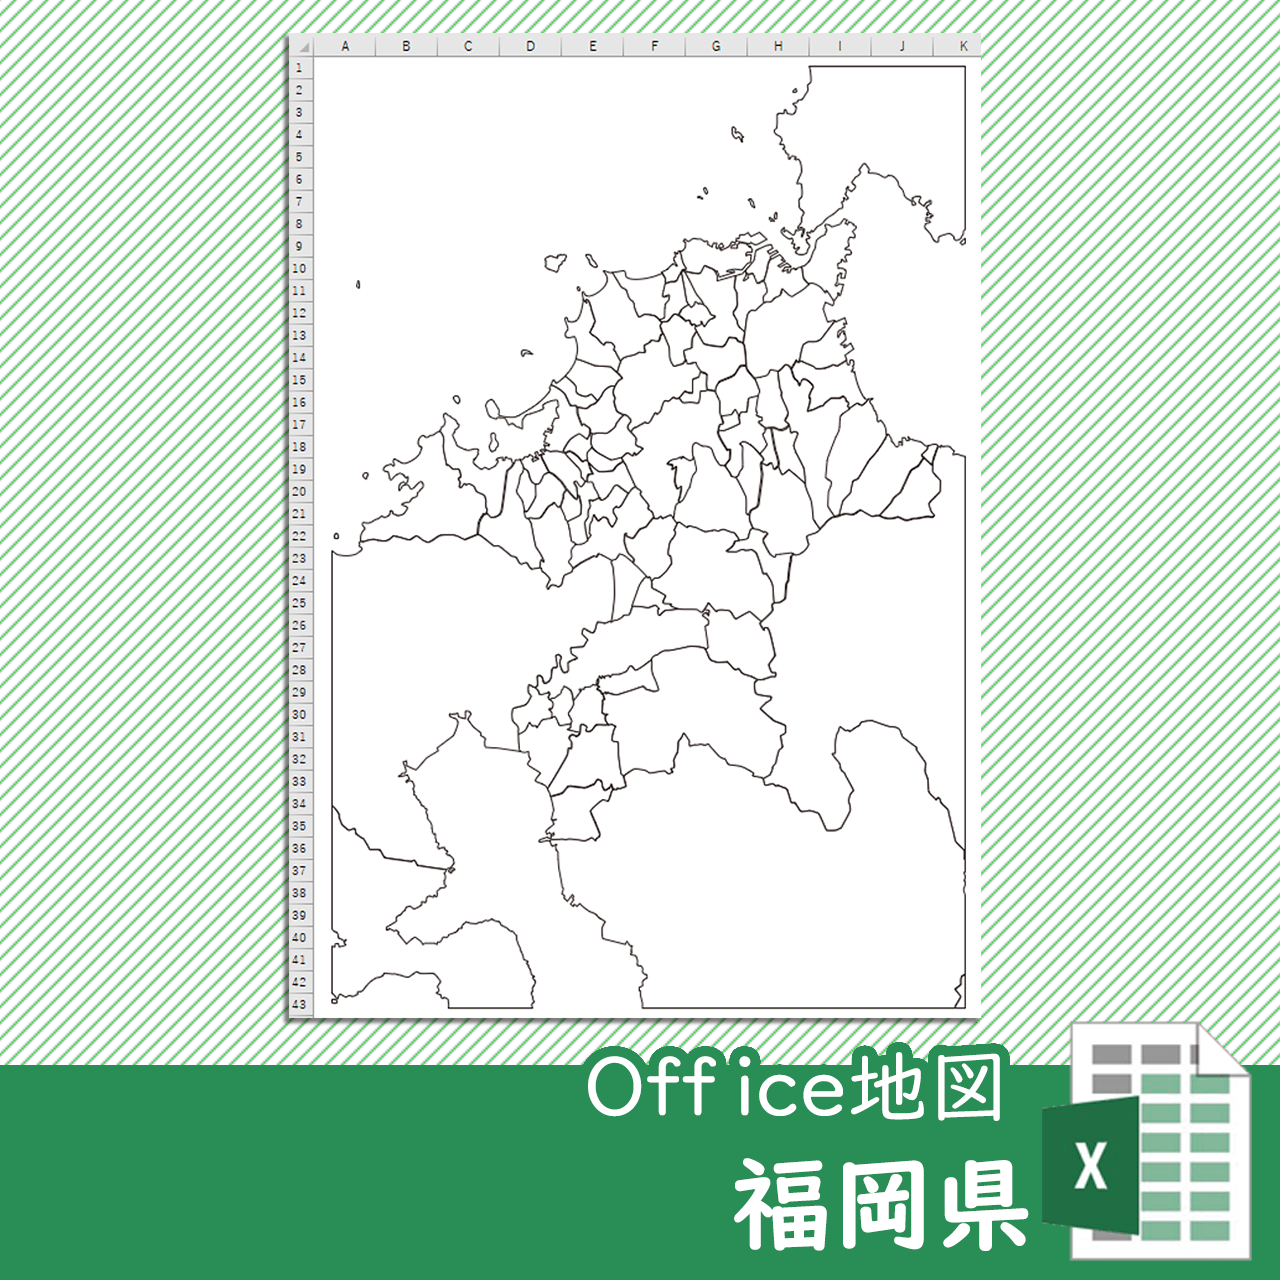 福岡県のOffice地図のサムネイル